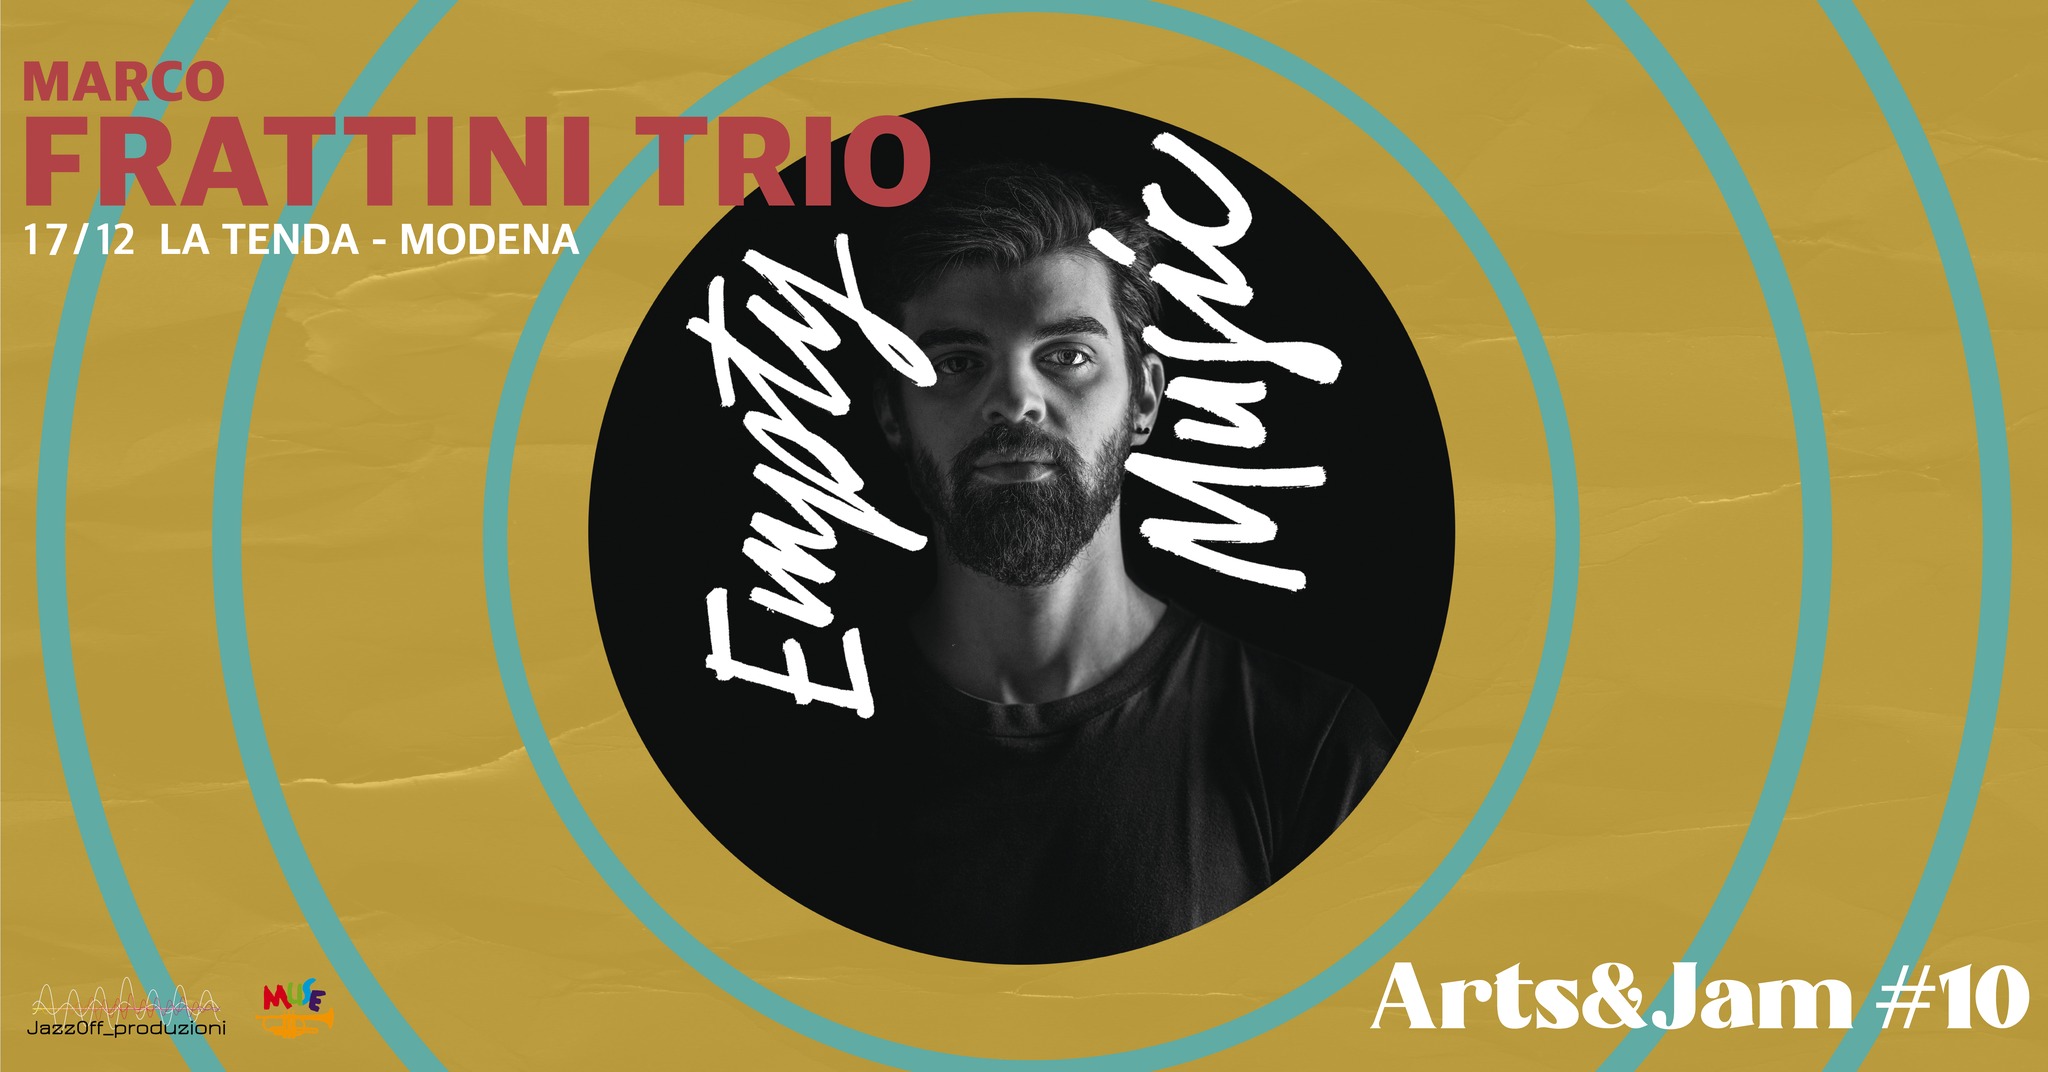 Arts&Jam#10 - Marco Frattini Trio